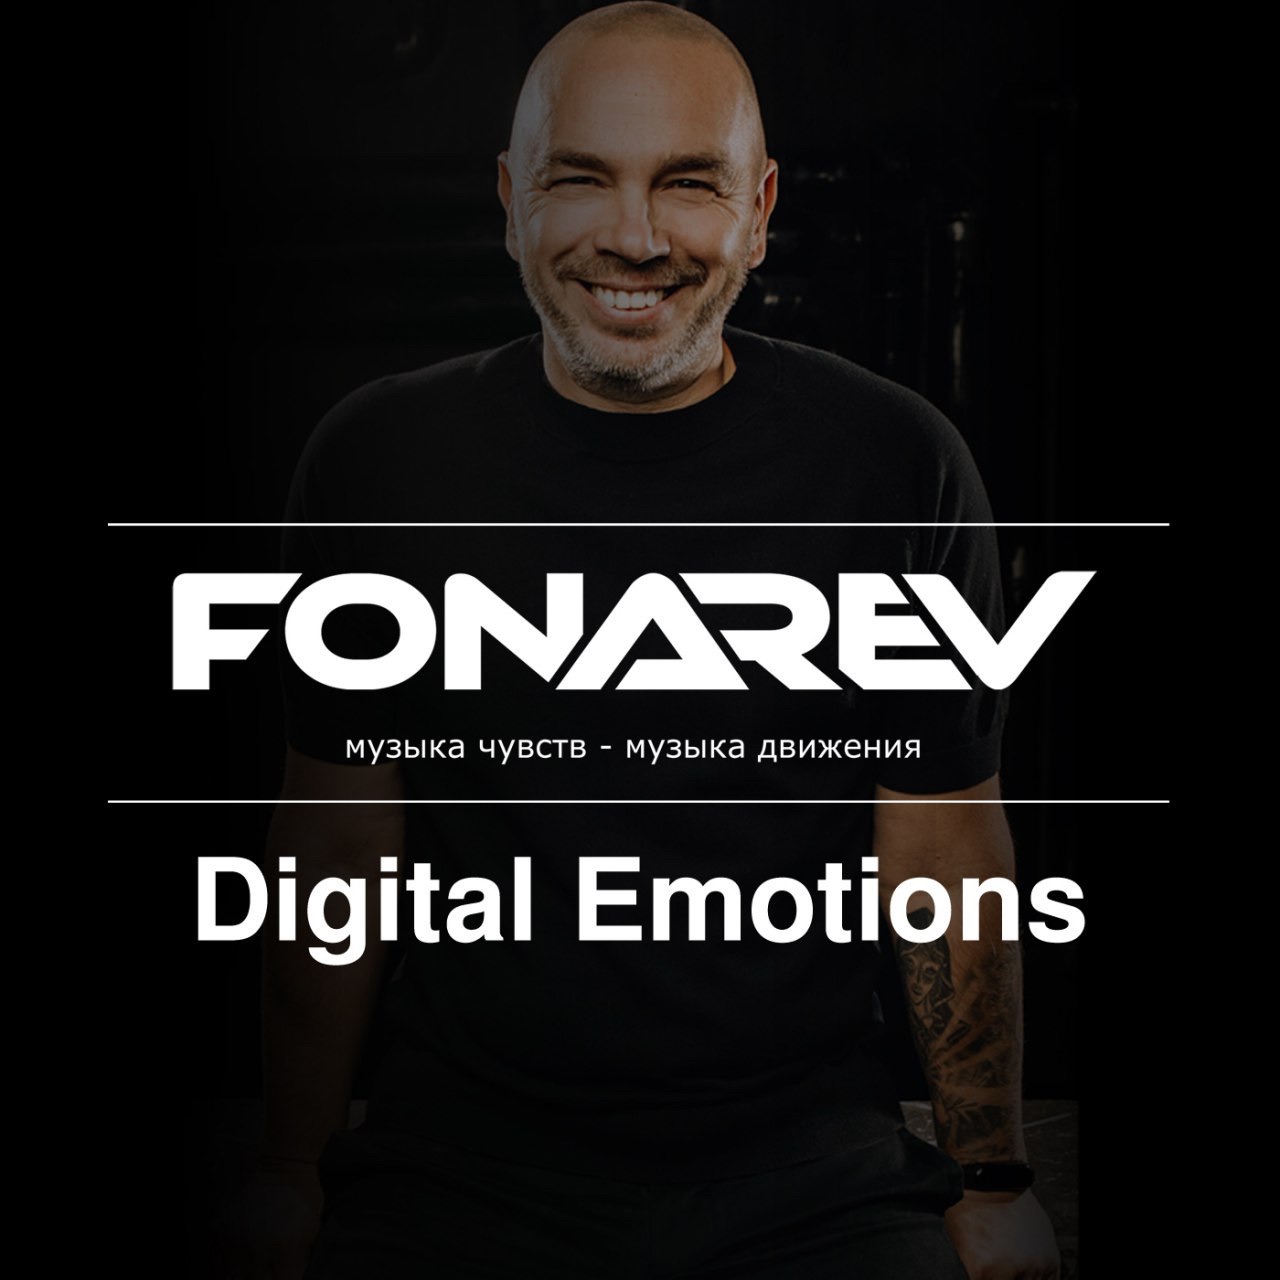 බාගත ⚡️ FONAREV - Digital Emotions # 725. 📡